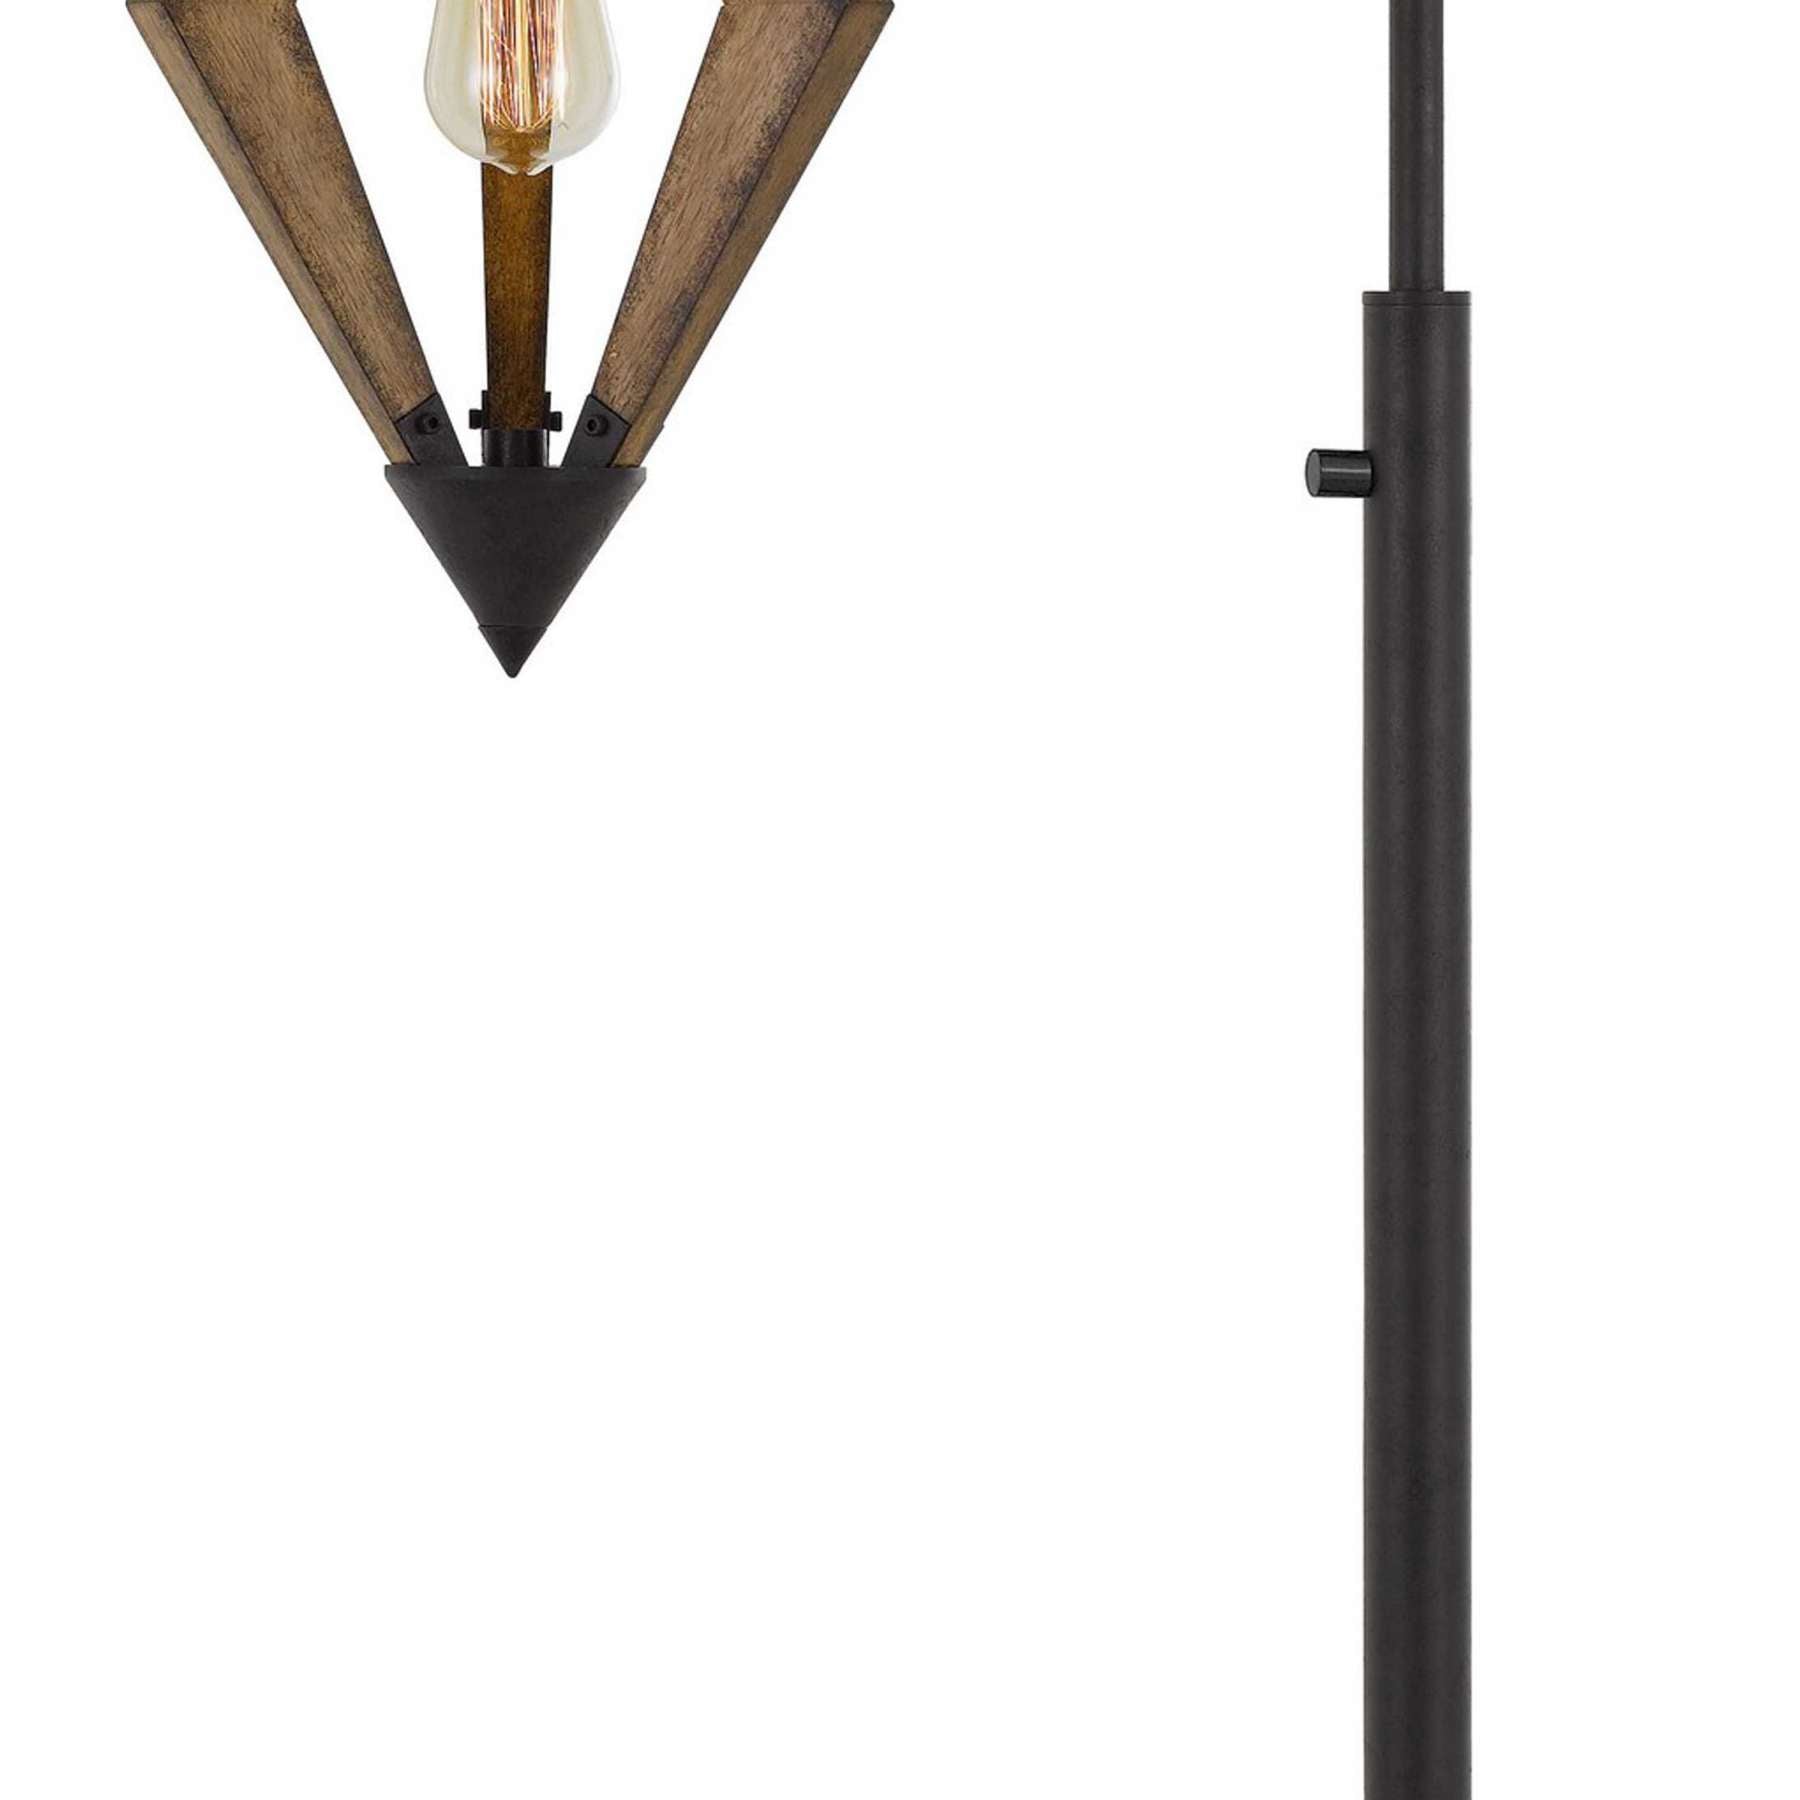 Tubular Metal Downbridge Floor Lamp With Wooden Accents, Black By Benzara